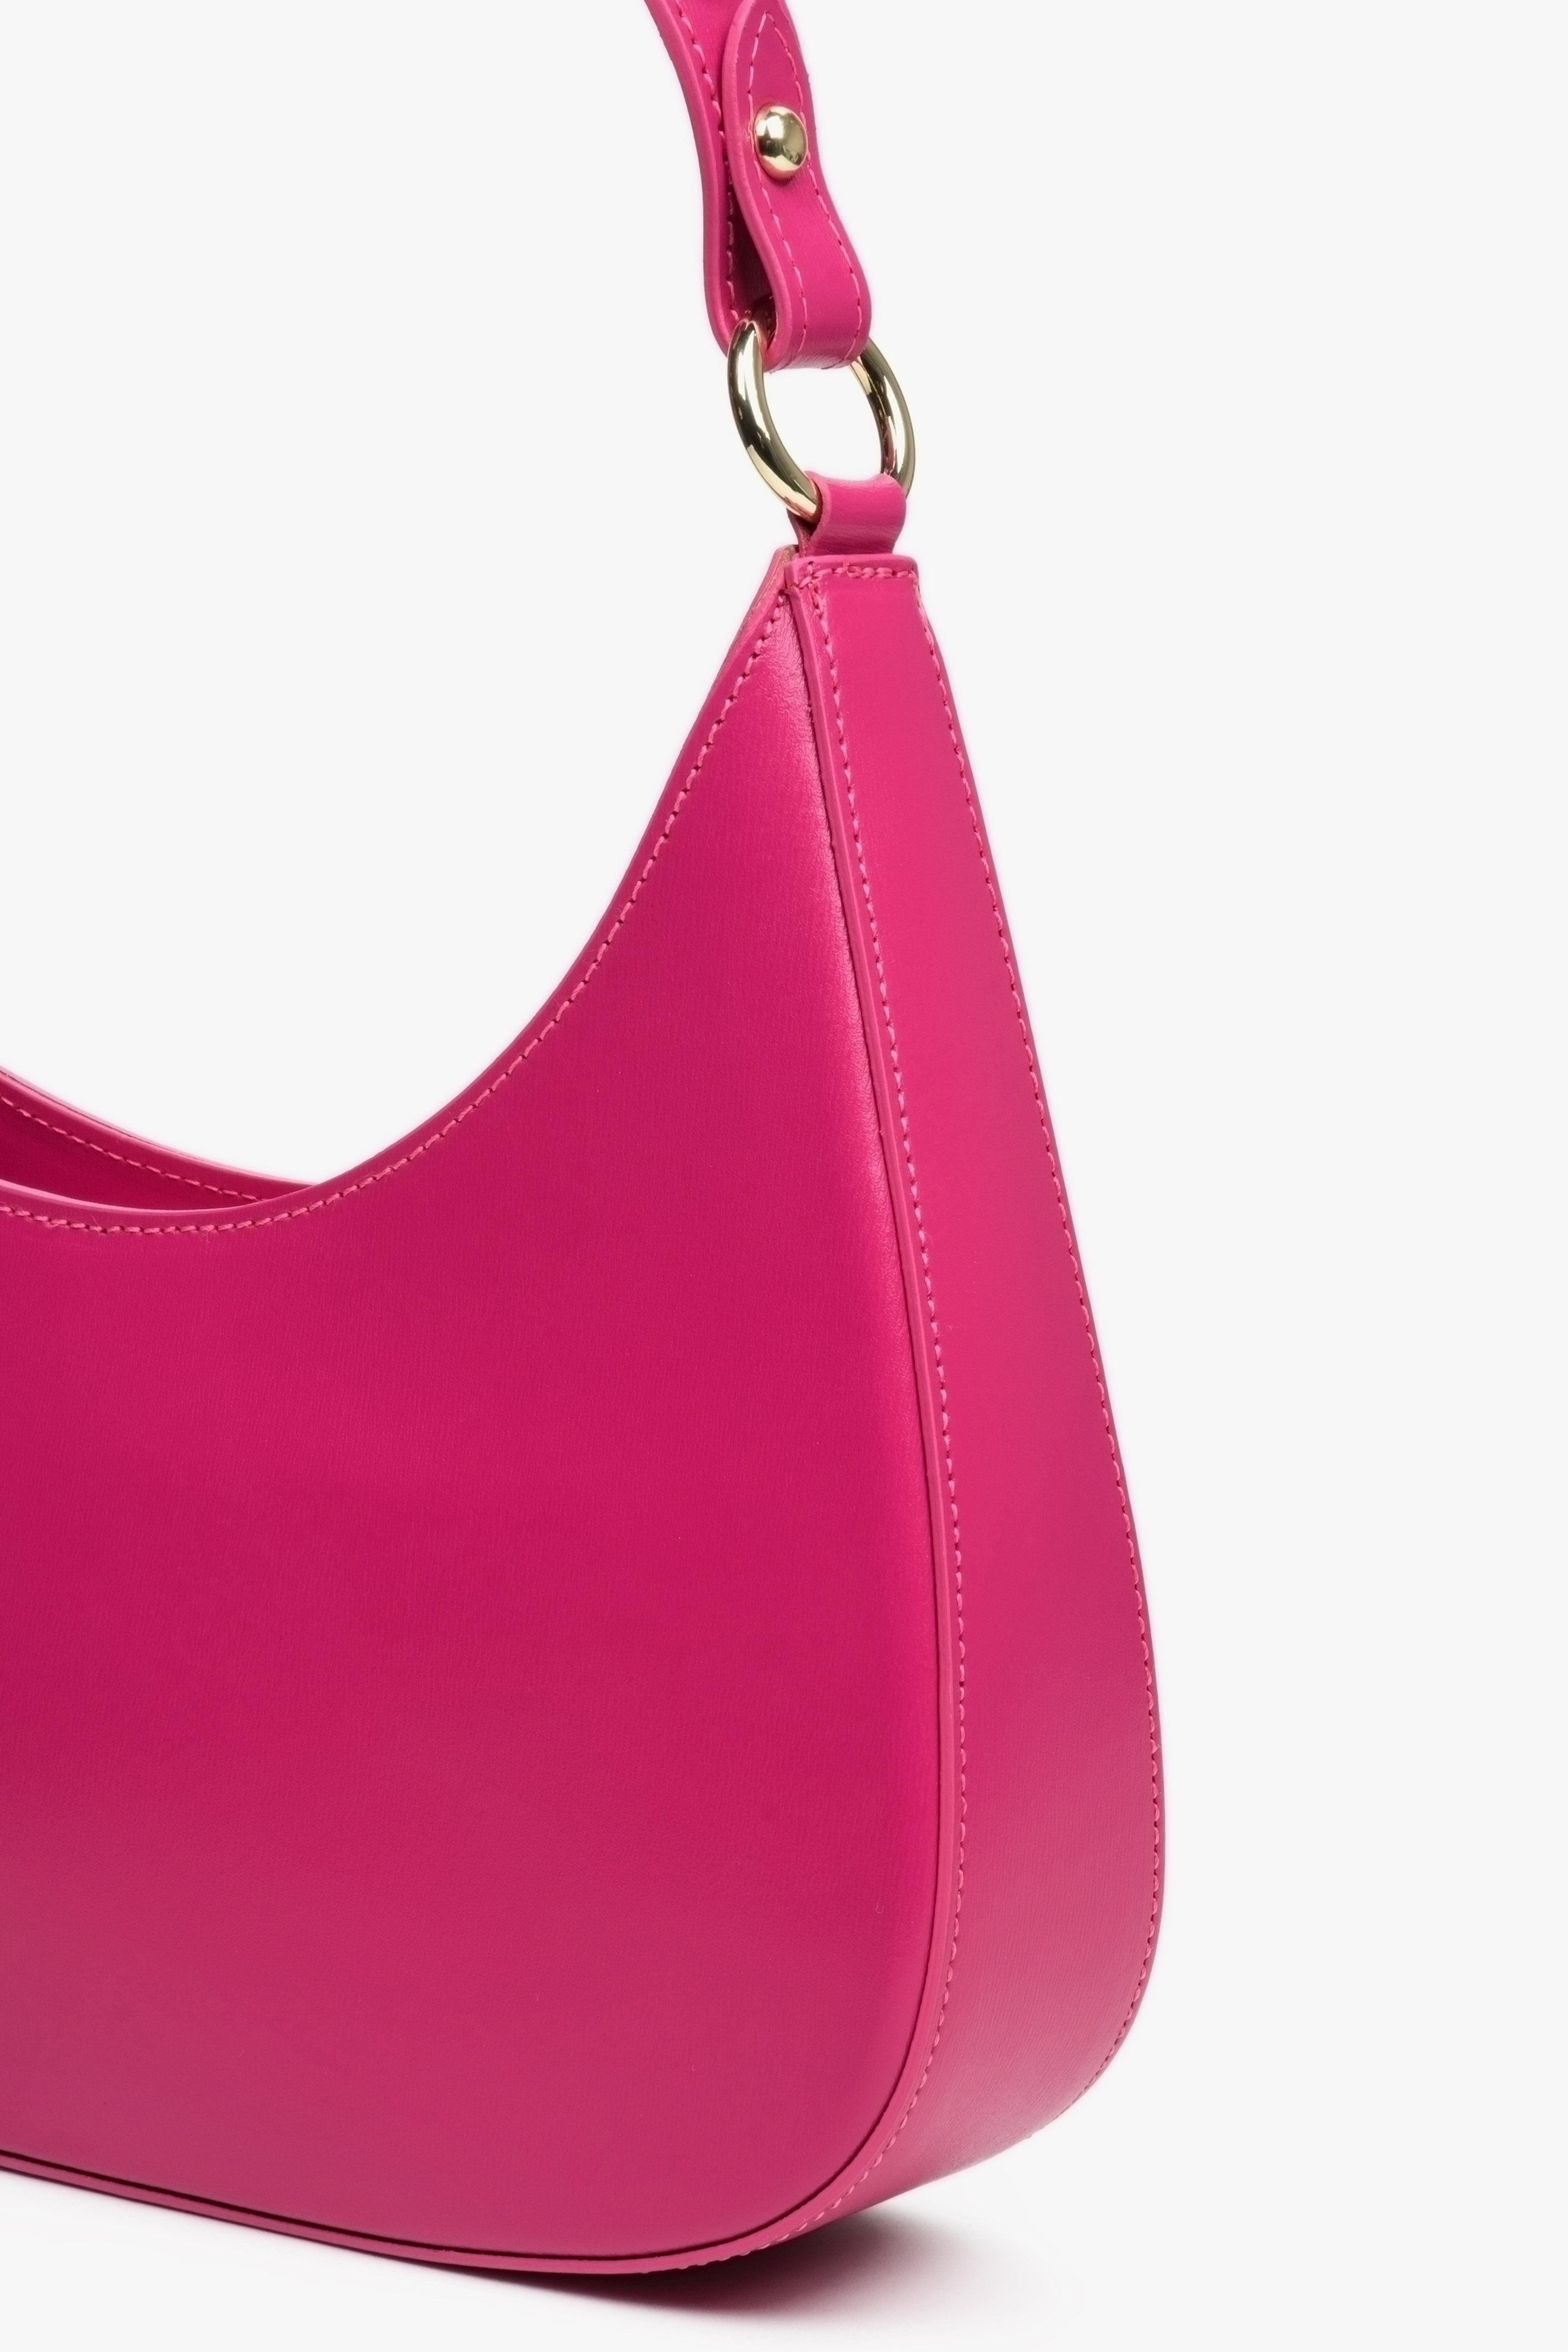 Torebka damska z włoskiej skóry naturalnej typu shoulder bag w kolorze różowym.